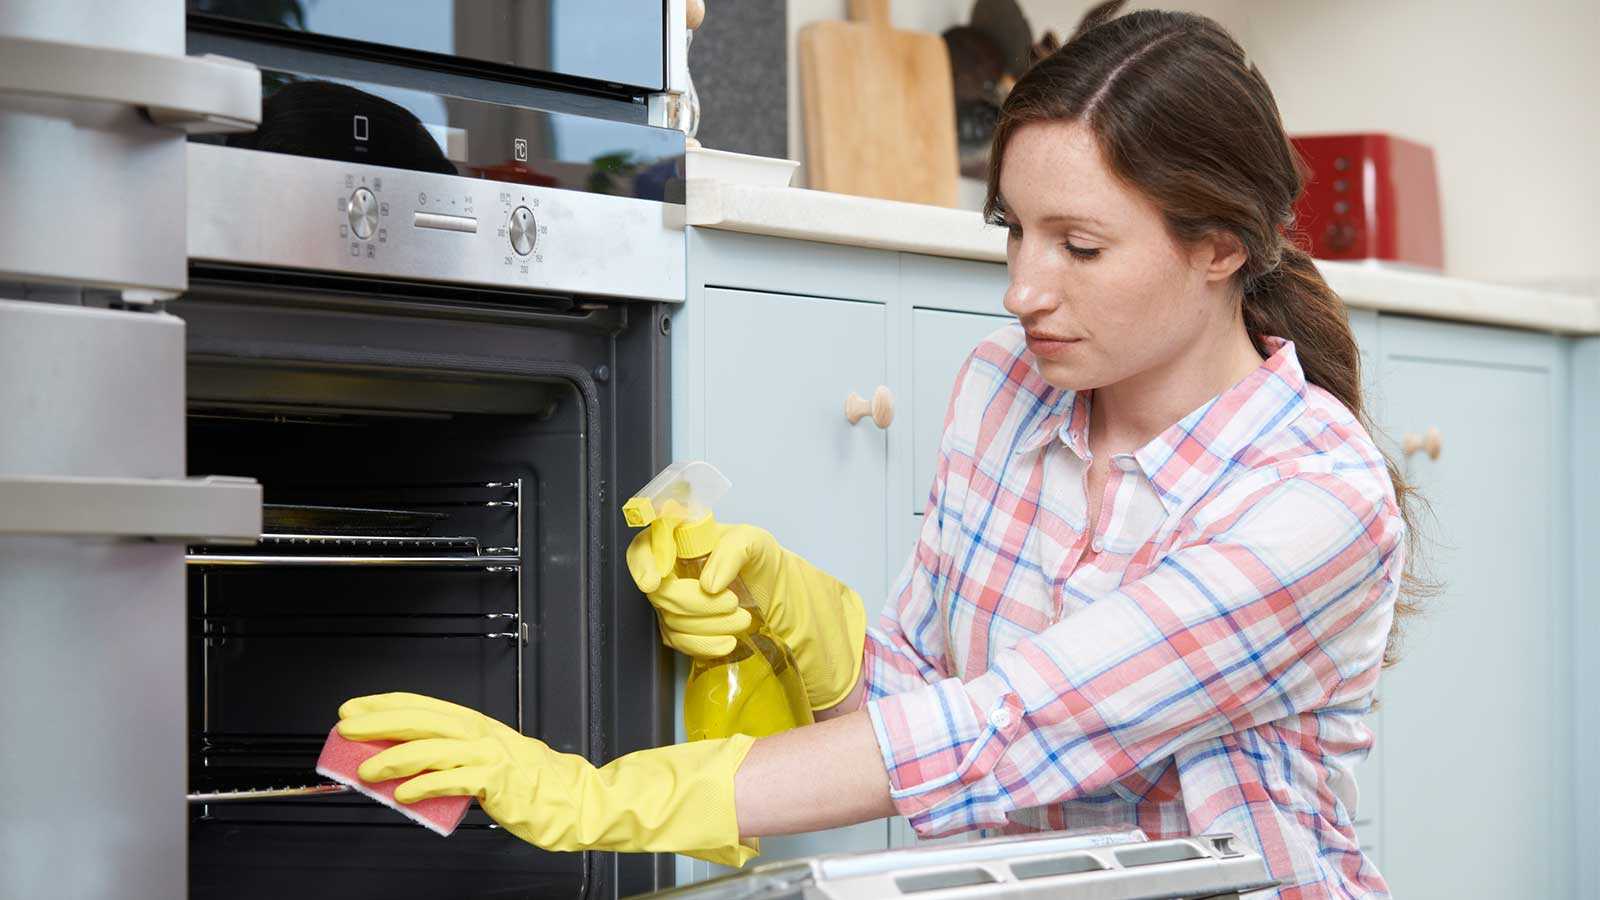 5 способов быстро оттереть брызги жира с кухонного гарнитура